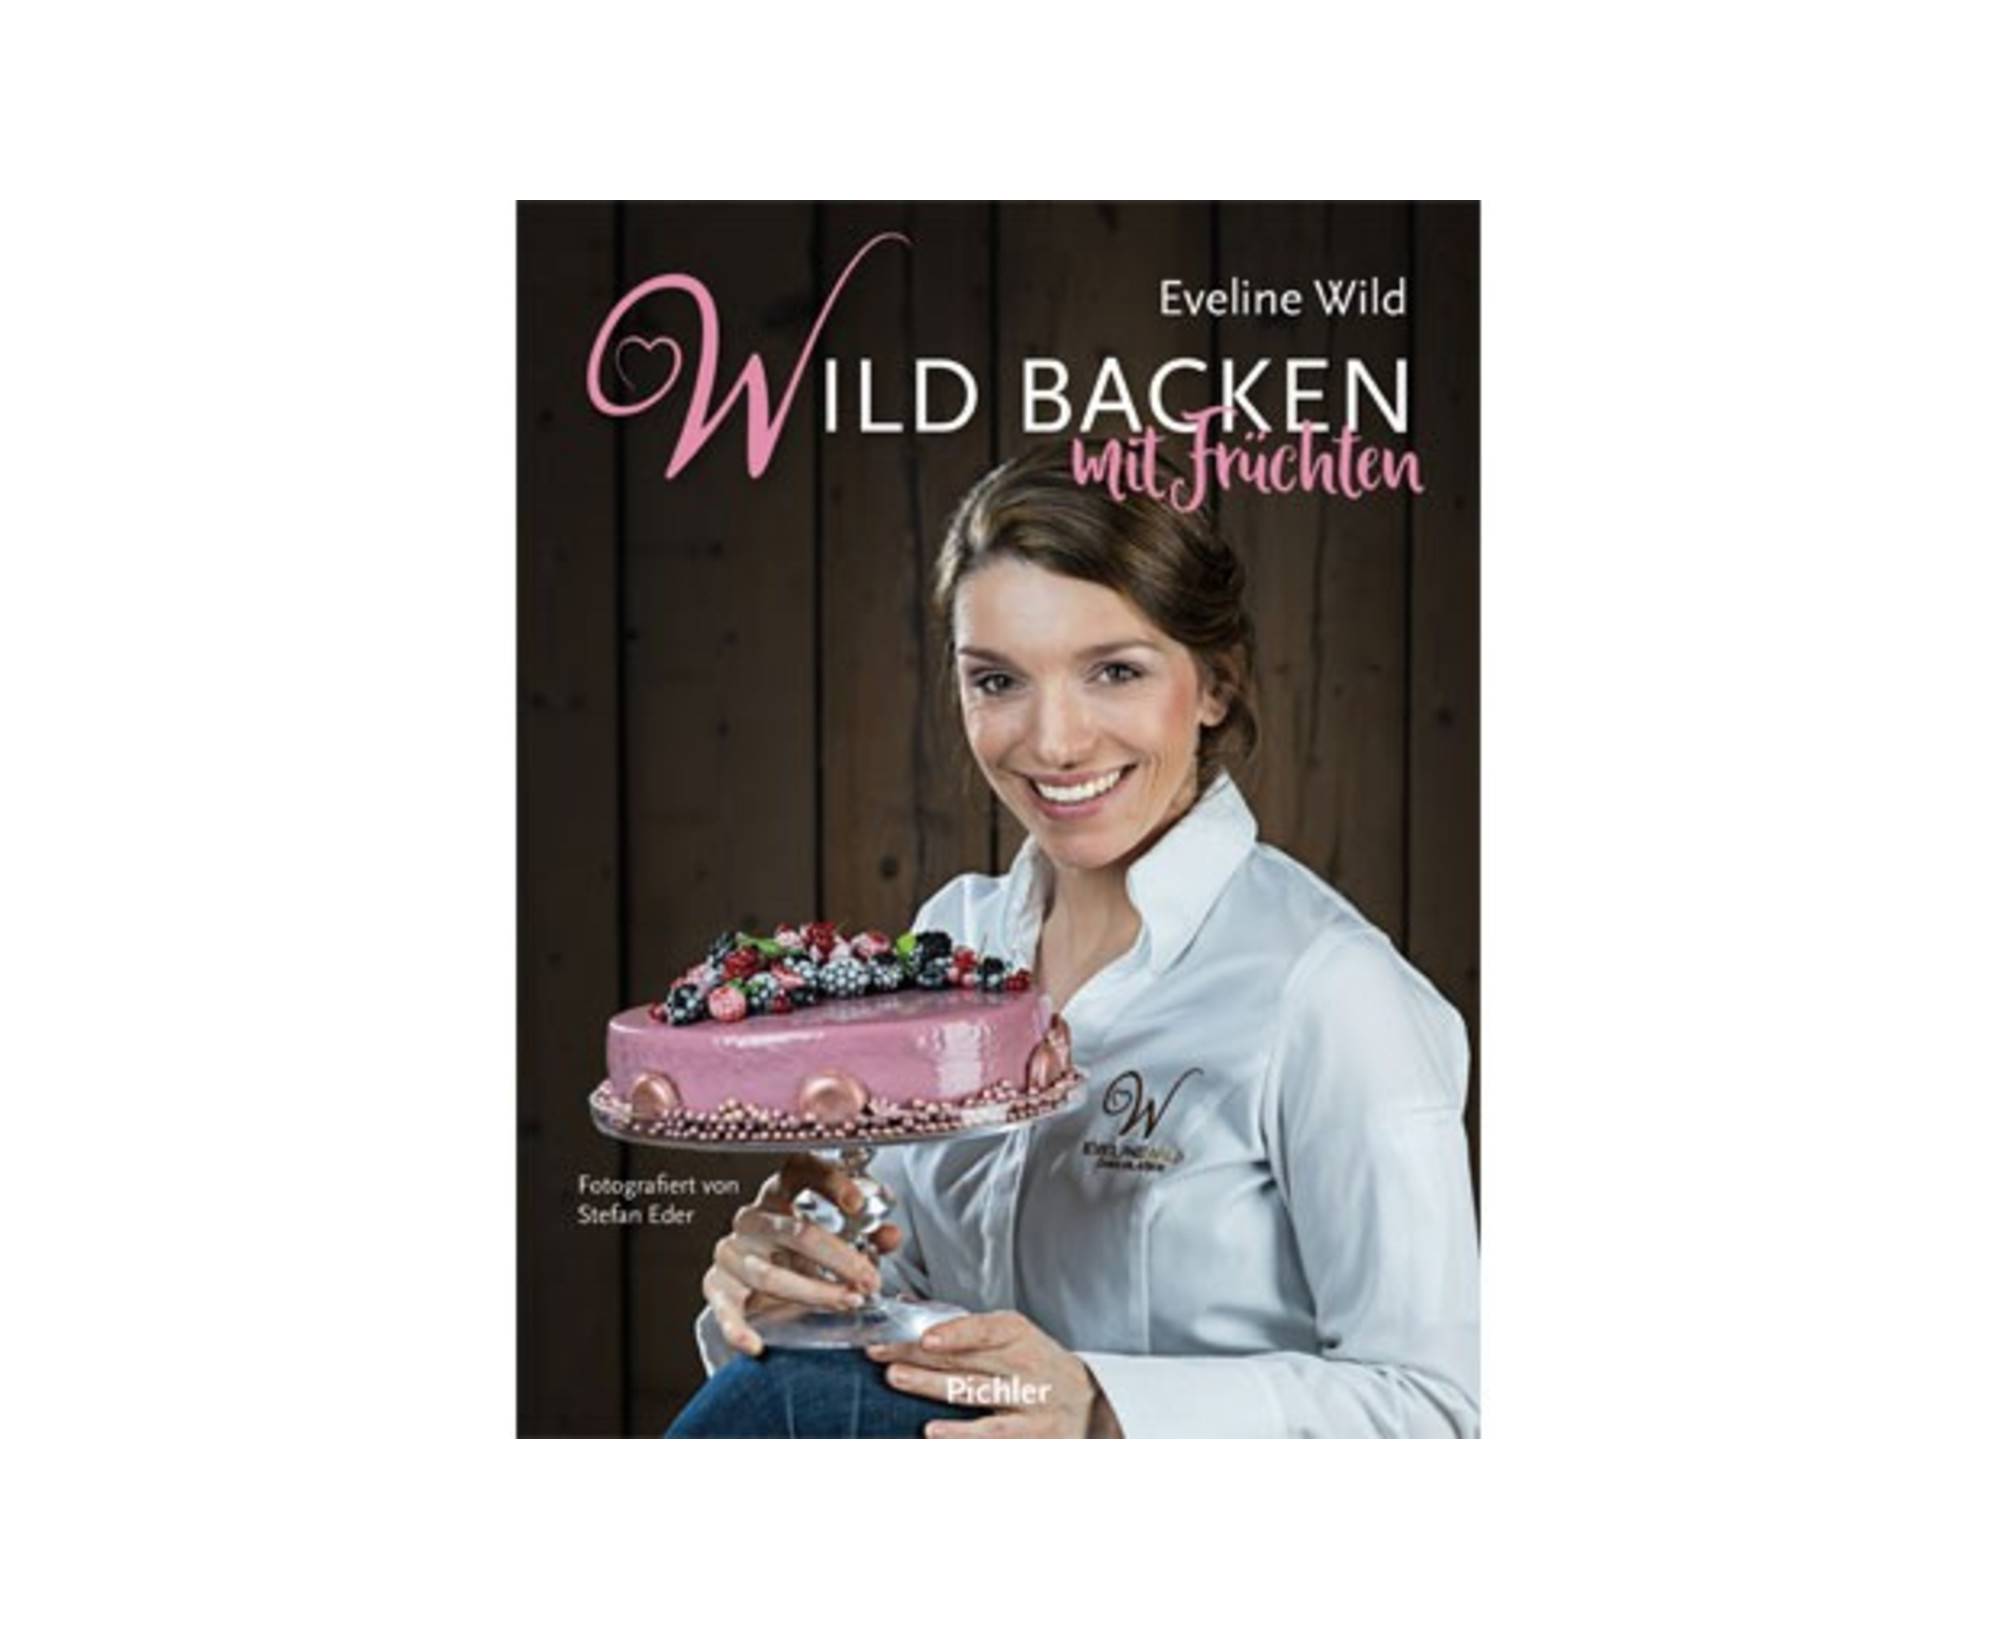 Wild backen mit Früchten / Pichler Verlag